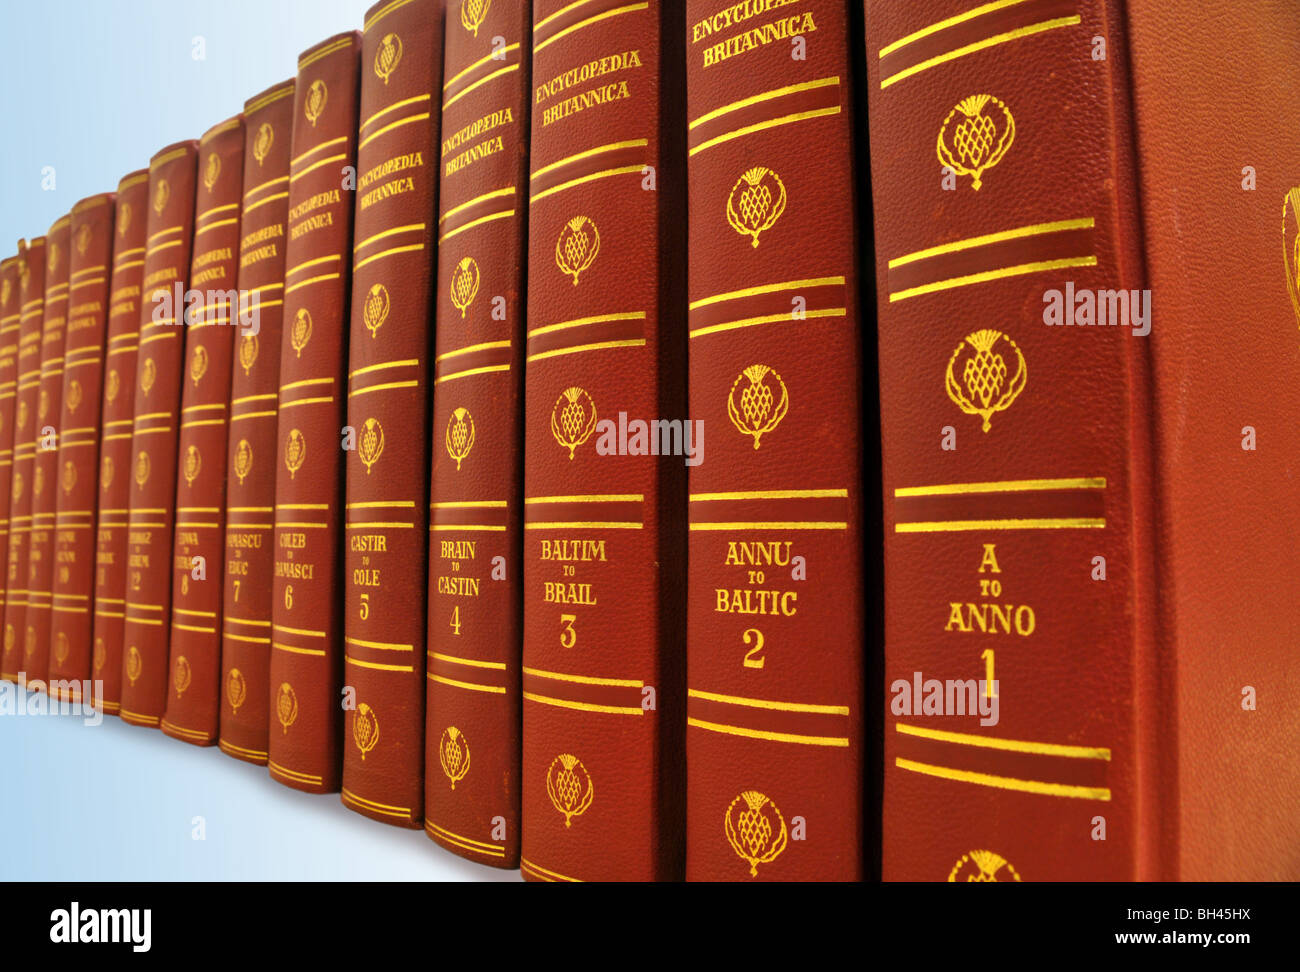 Una fila de libros de la Encyclopaedia Britannica. Foto de stock